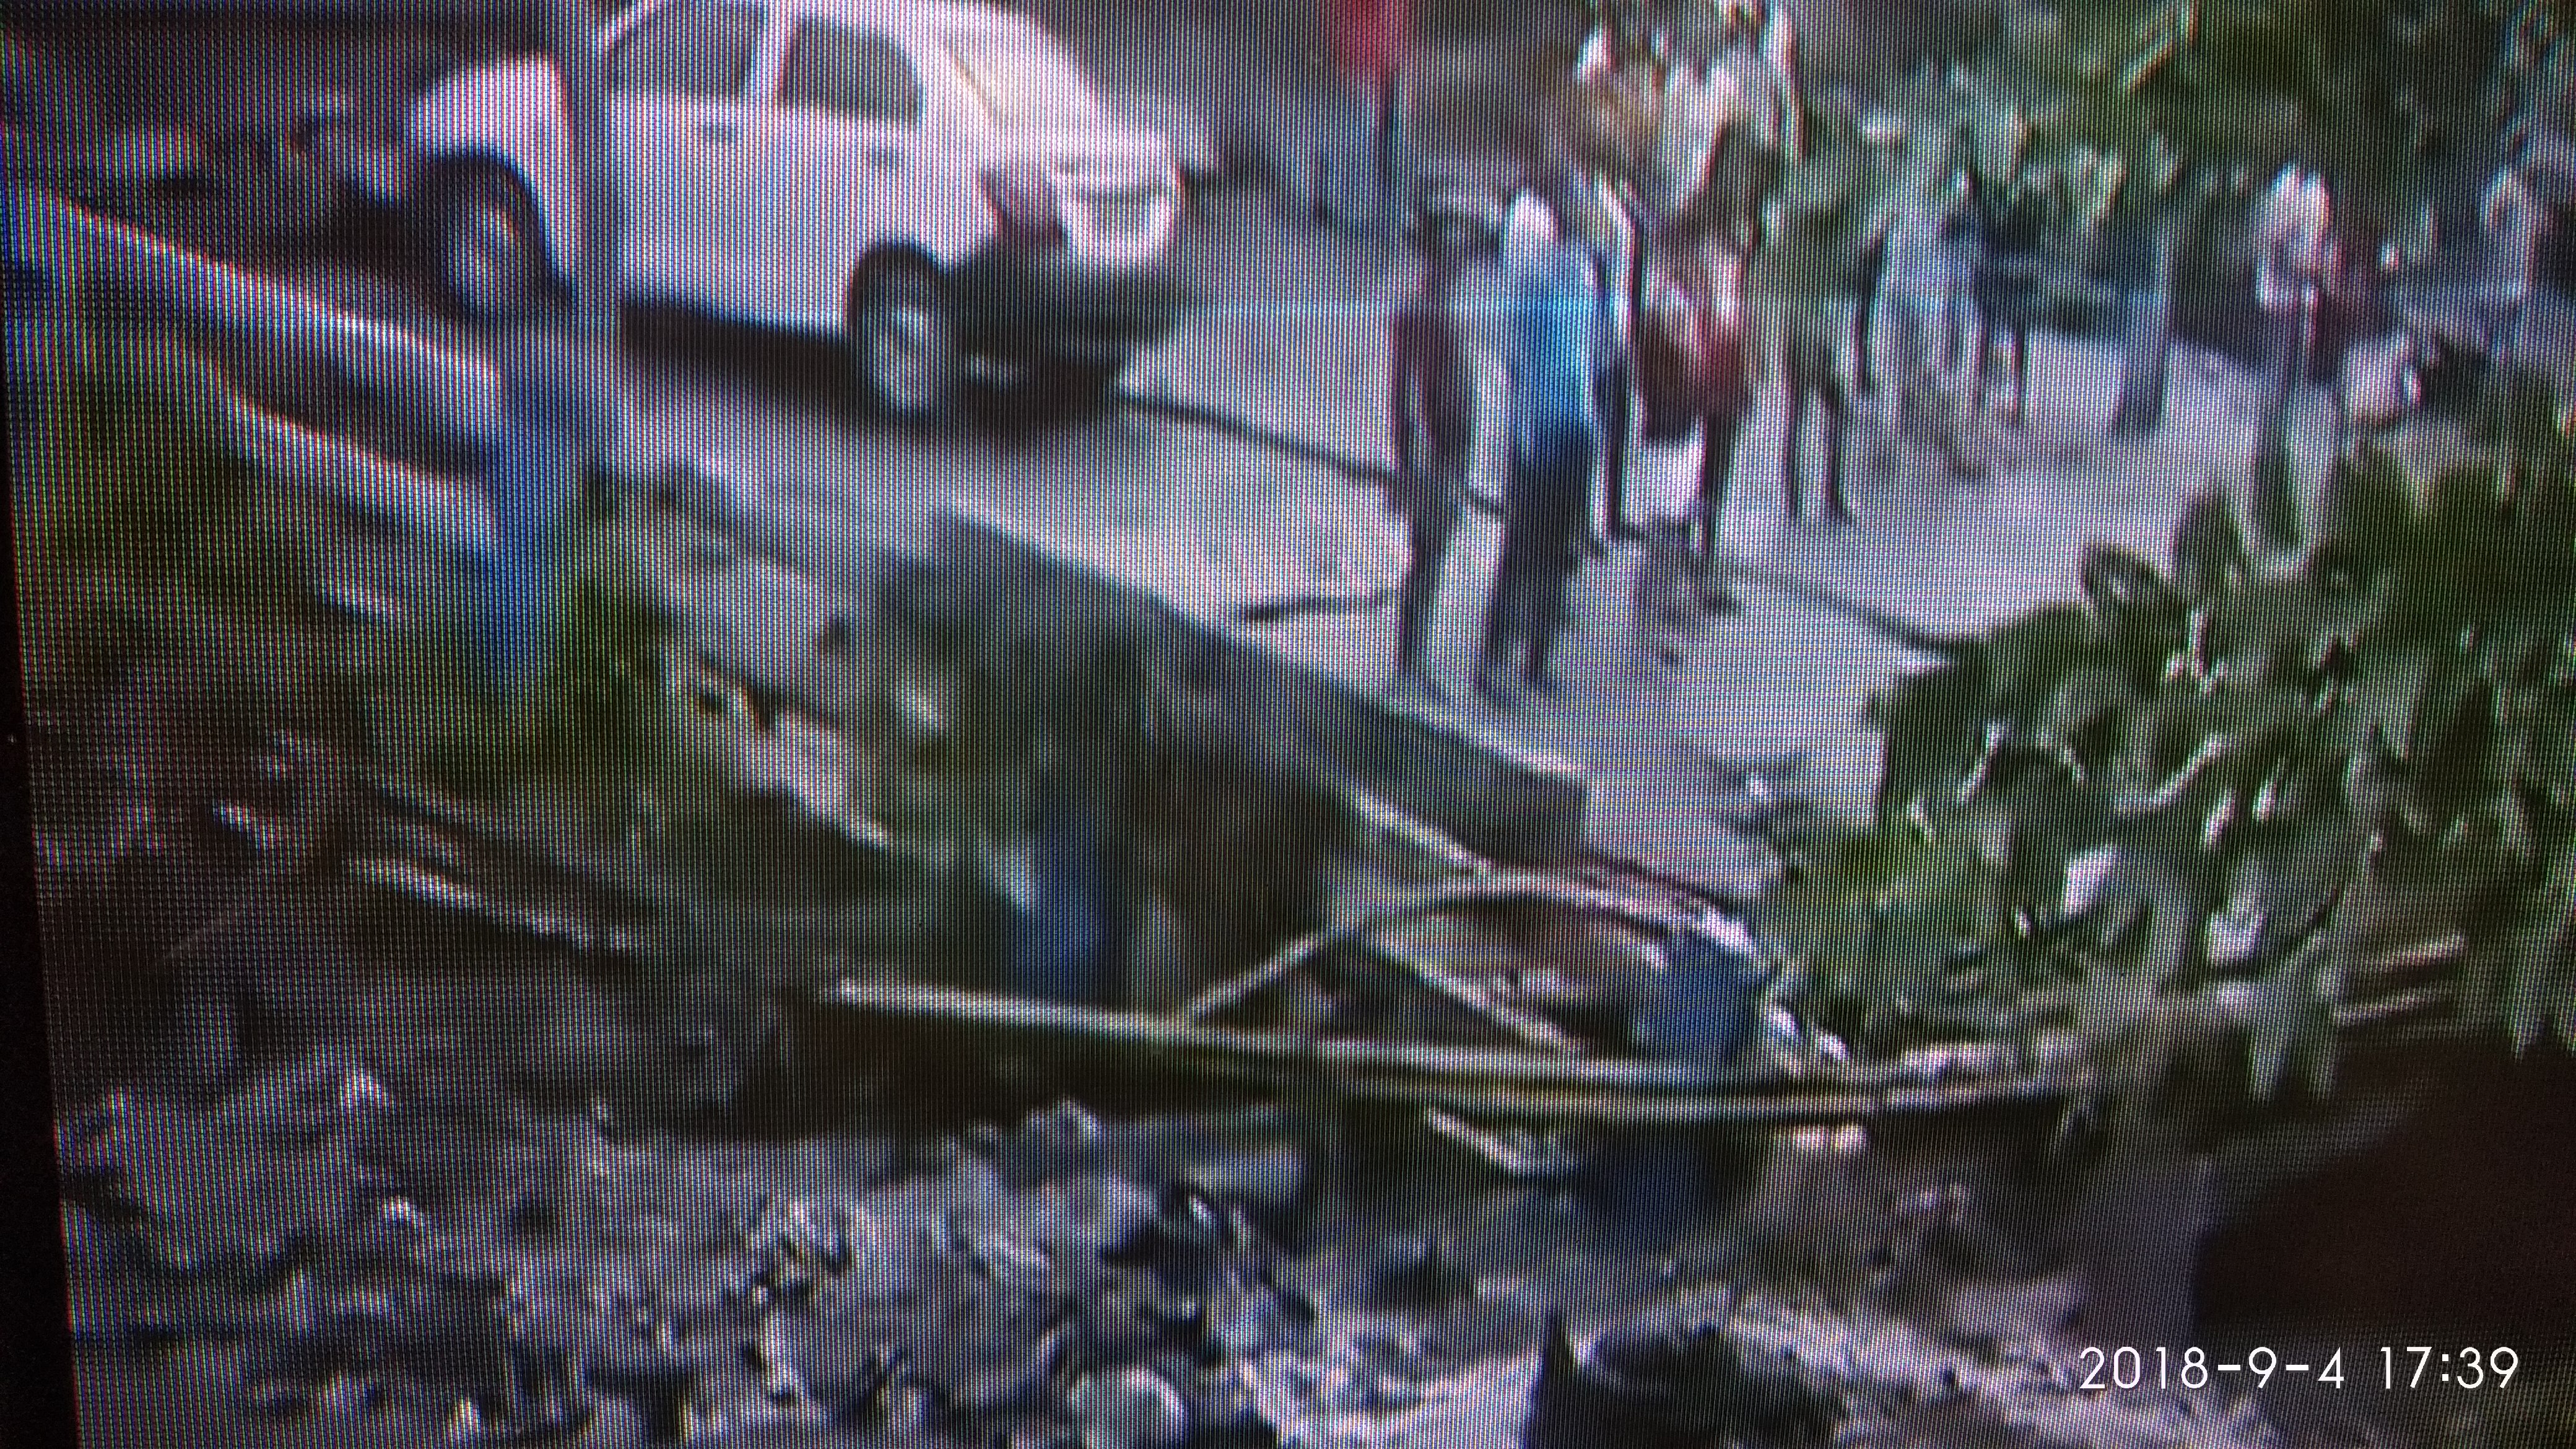 कोलकाता के तारातला में बड़ा हादसा, पुल गिरने से कई लोगों के दबने की आशंका, मलबे में दबने से अब तक एक की मौत